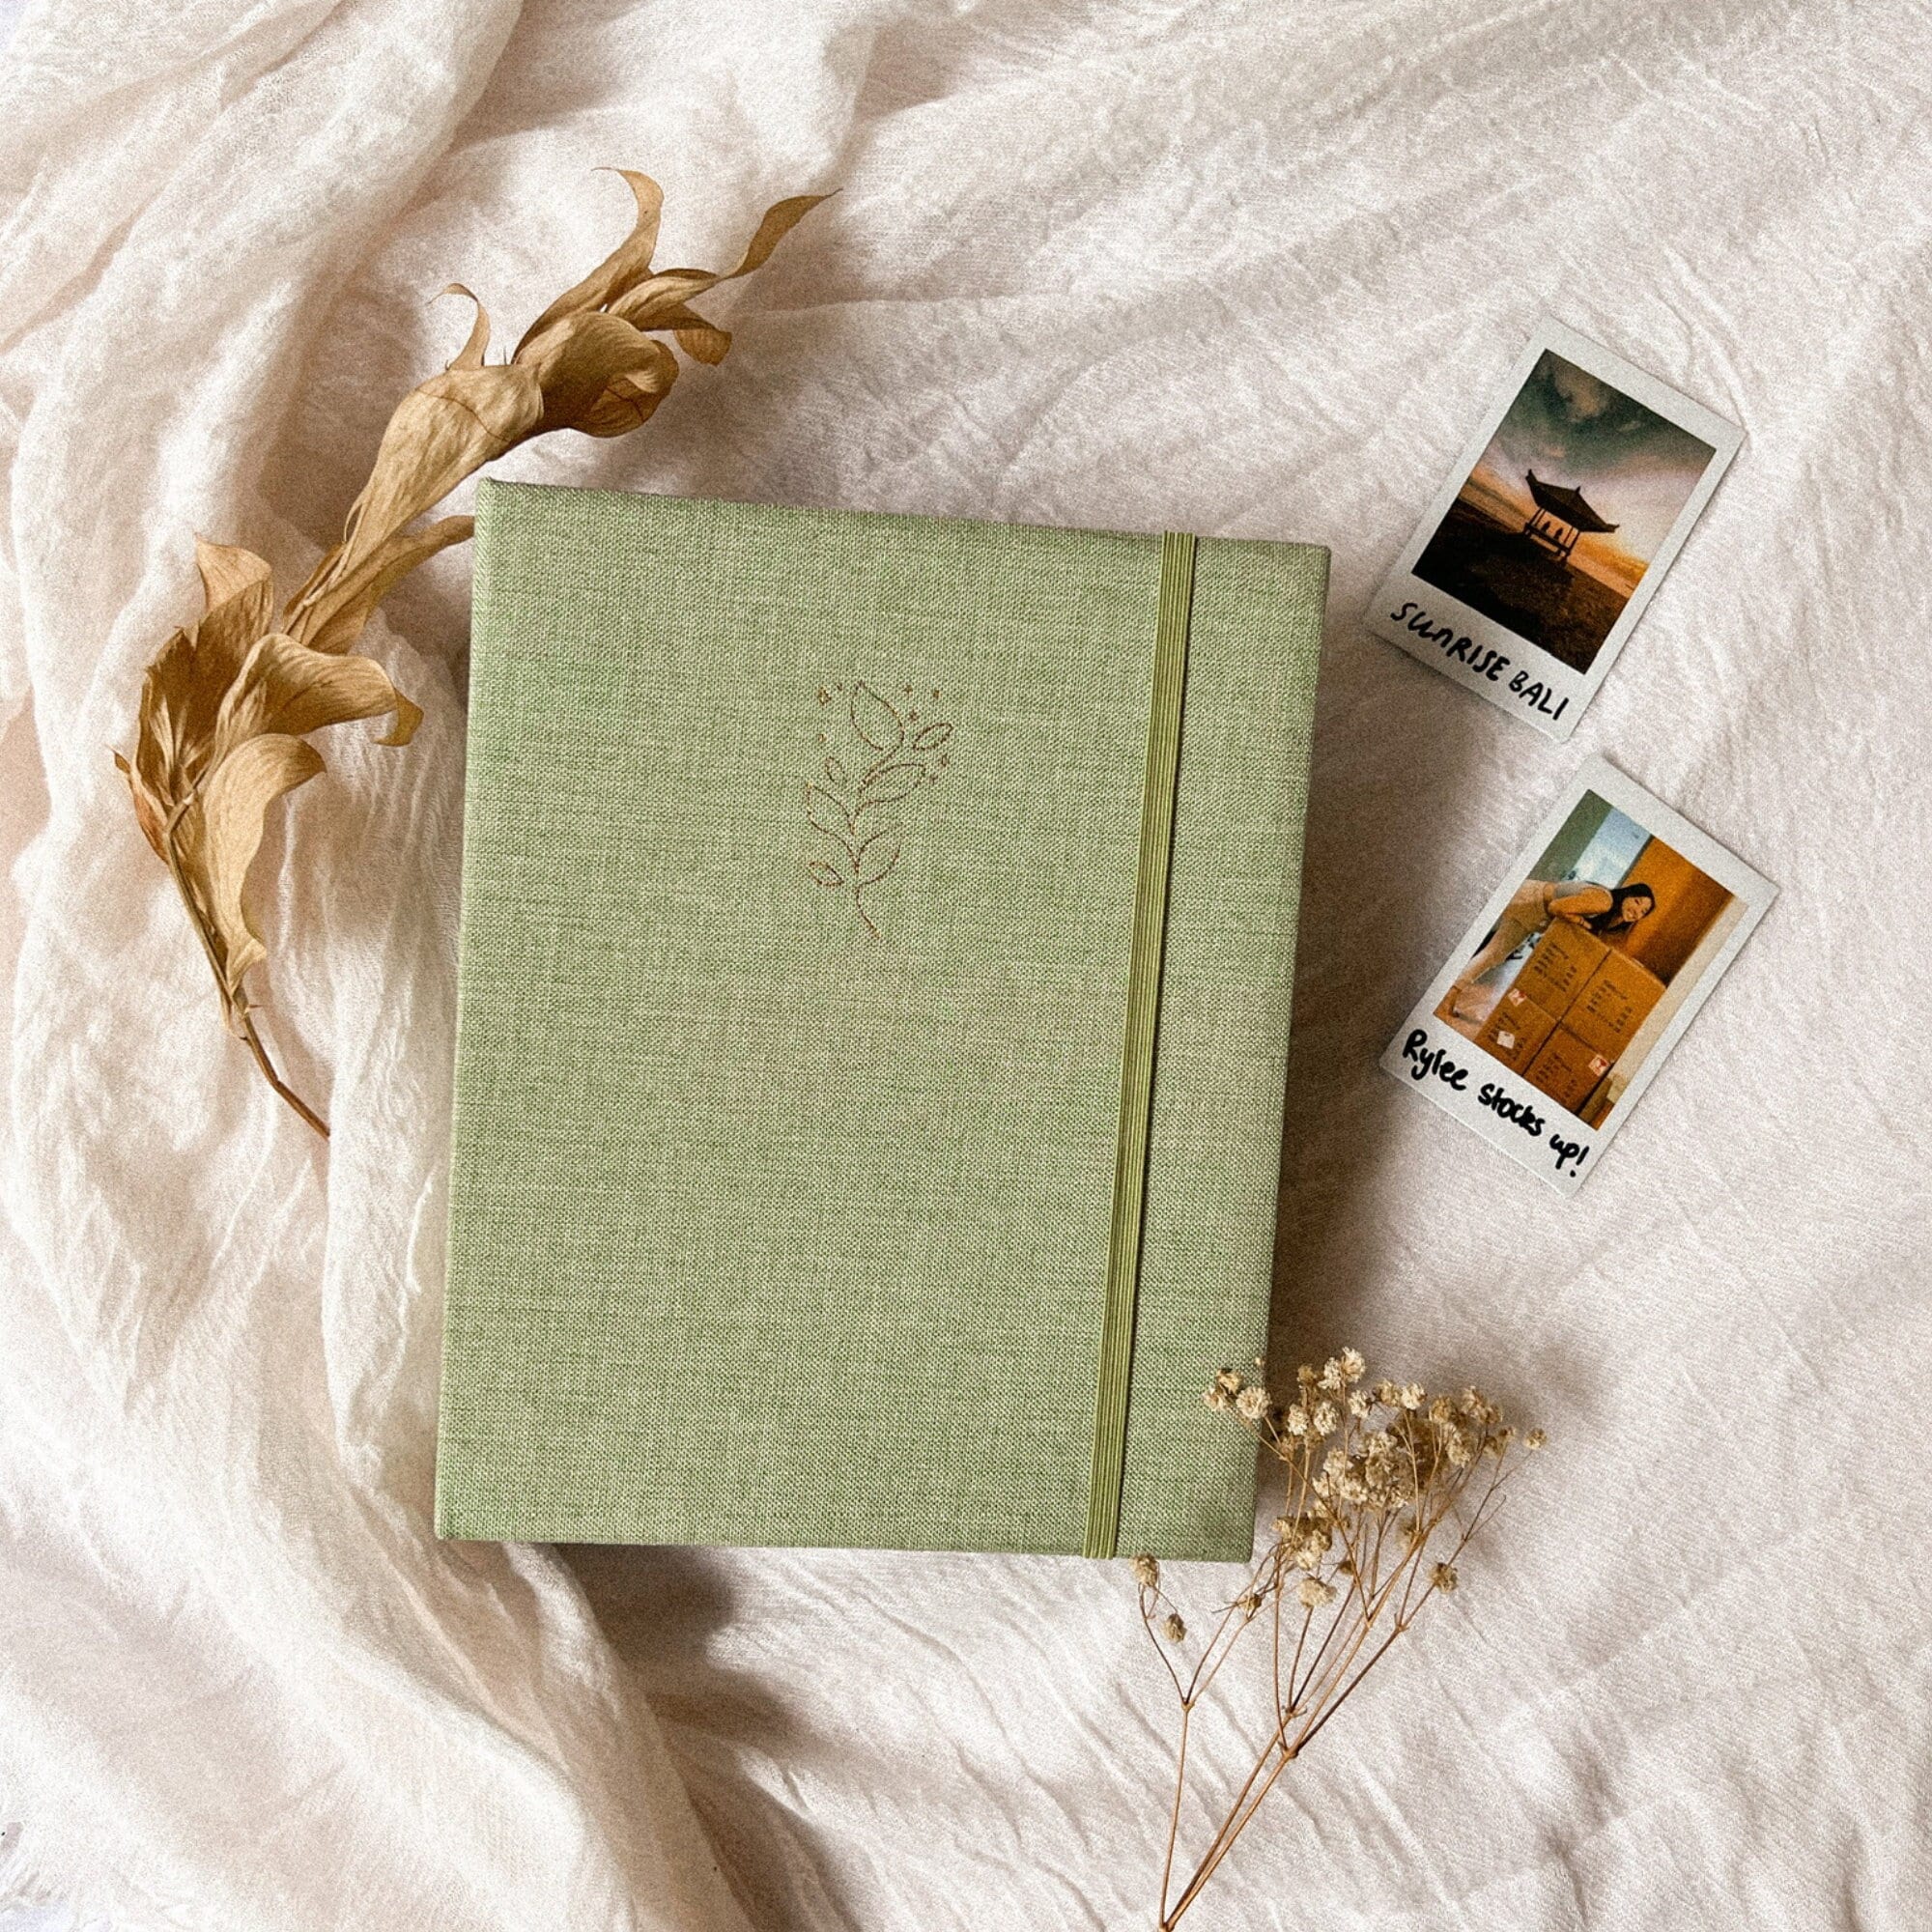 32 pages scrapbook album,Instax mini photo album, DIY Polaroid album, –  DokkiDesign